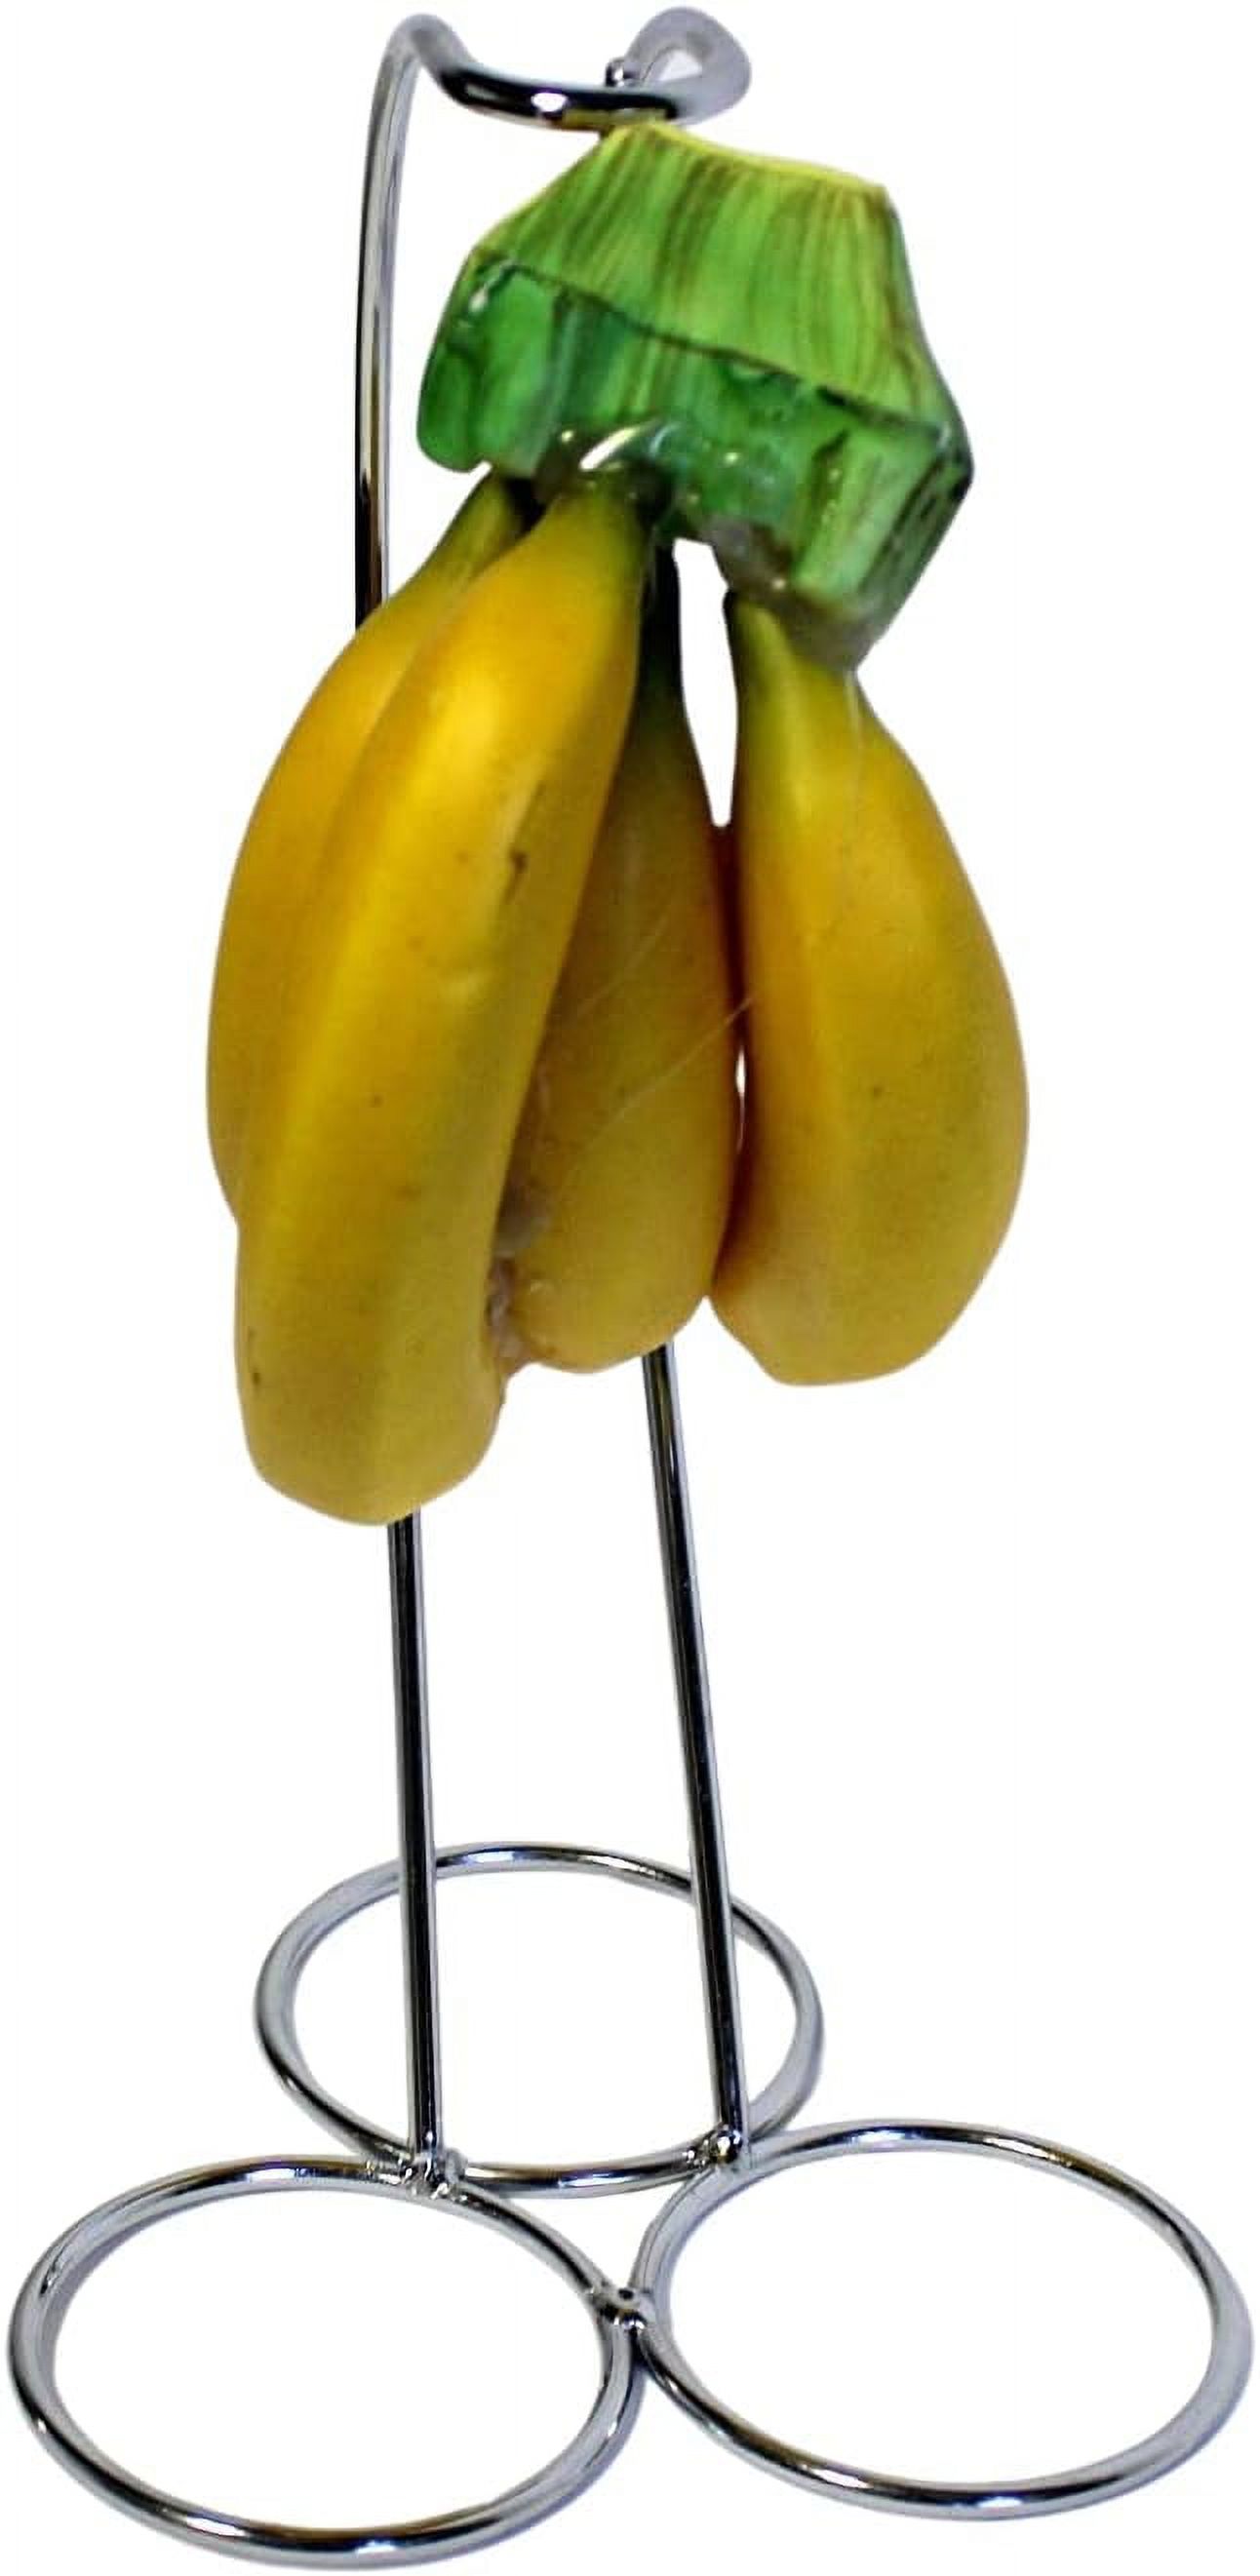 Silver Chrome Banana Tree Holder Ripen Fruit Evenly Prevents Bruising ...